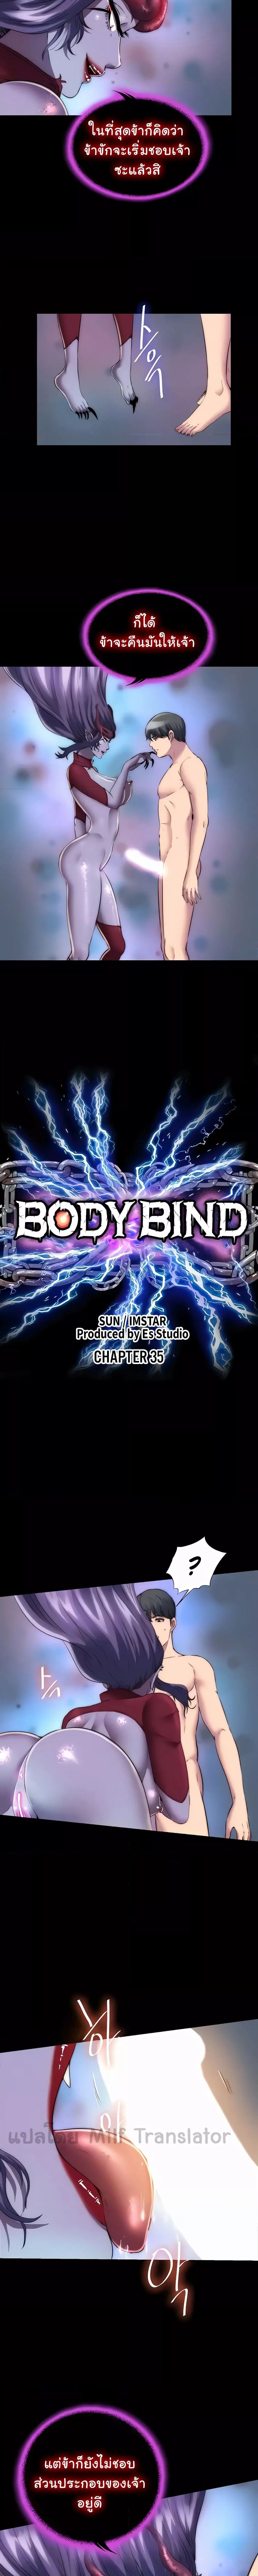 Body Bind ตอนที่ 35 ภาพ 1